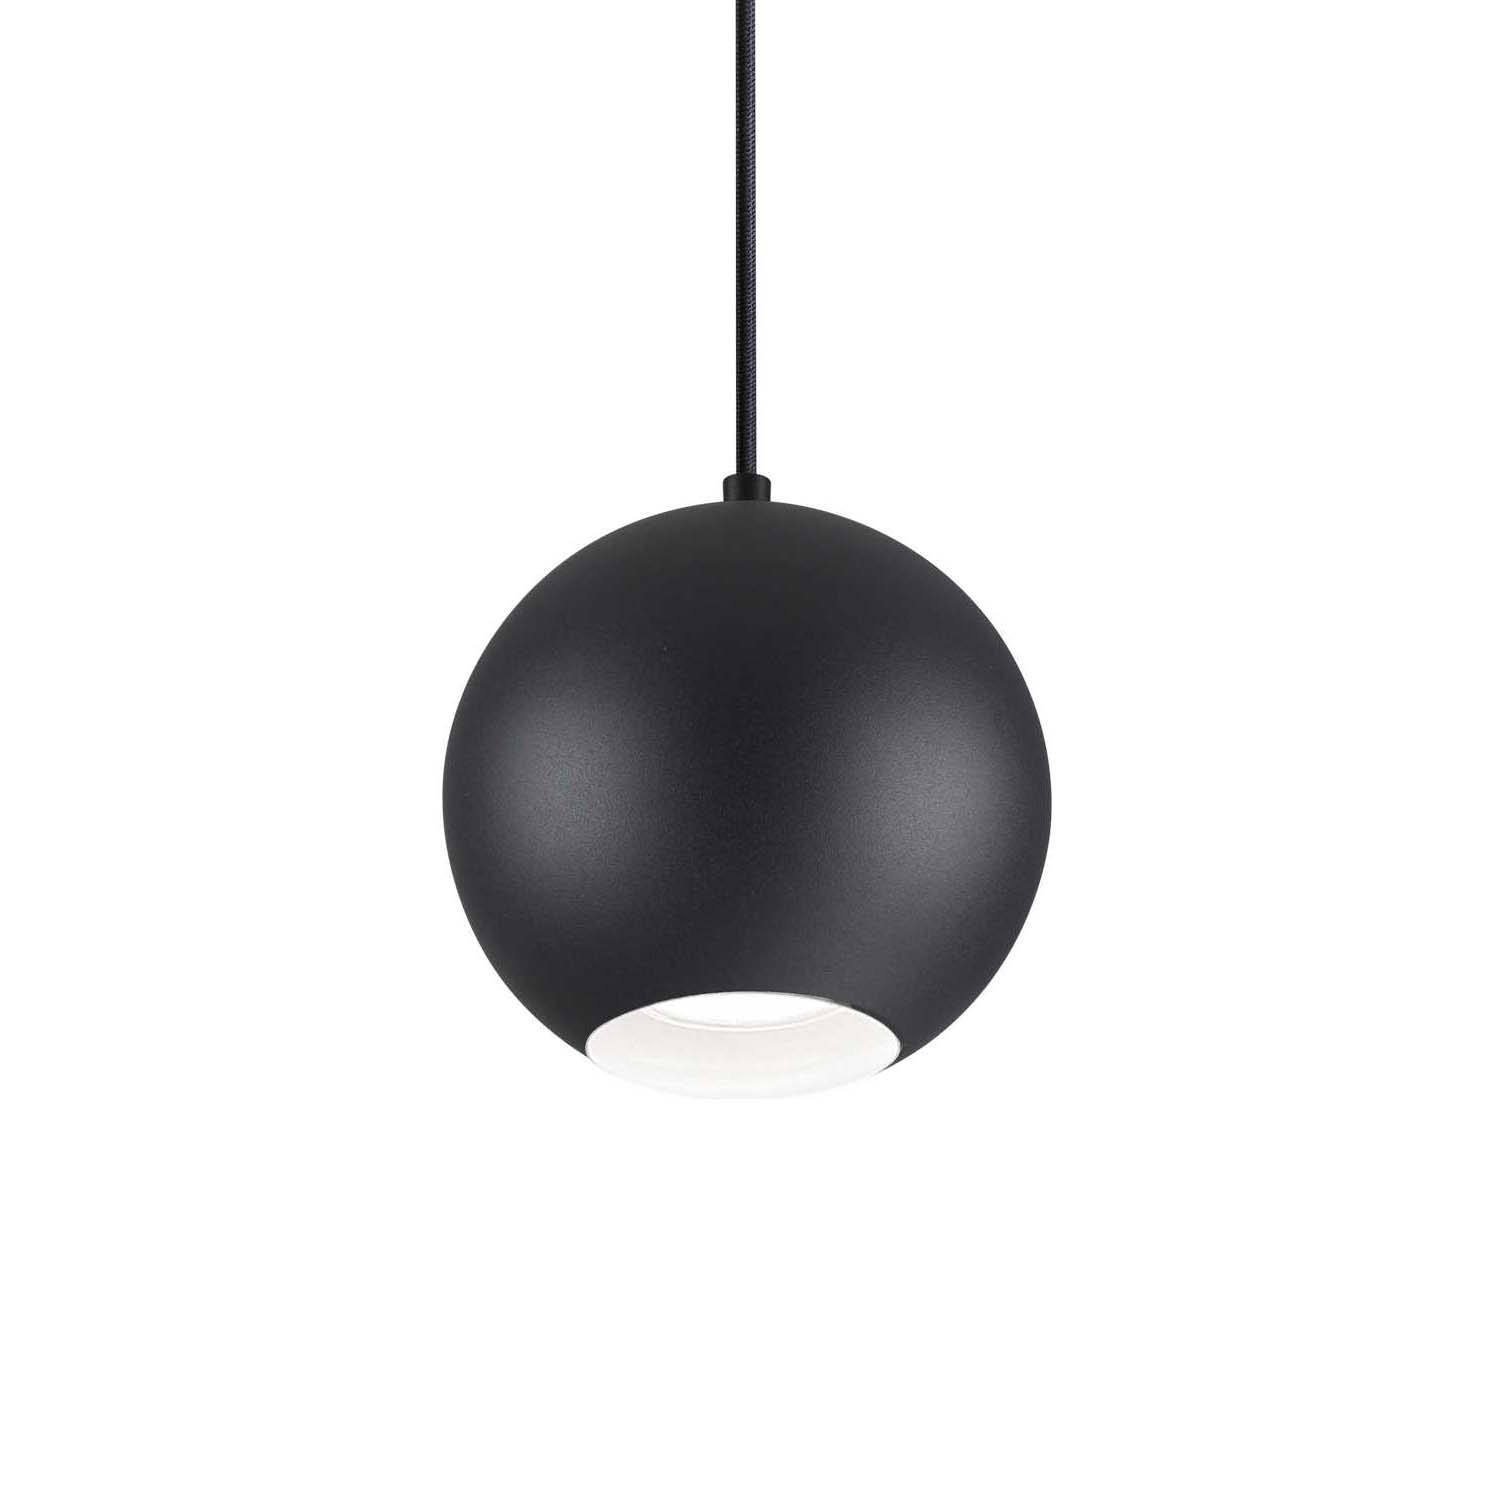 MR JACK - Chrome, white or black ball spot pendant light